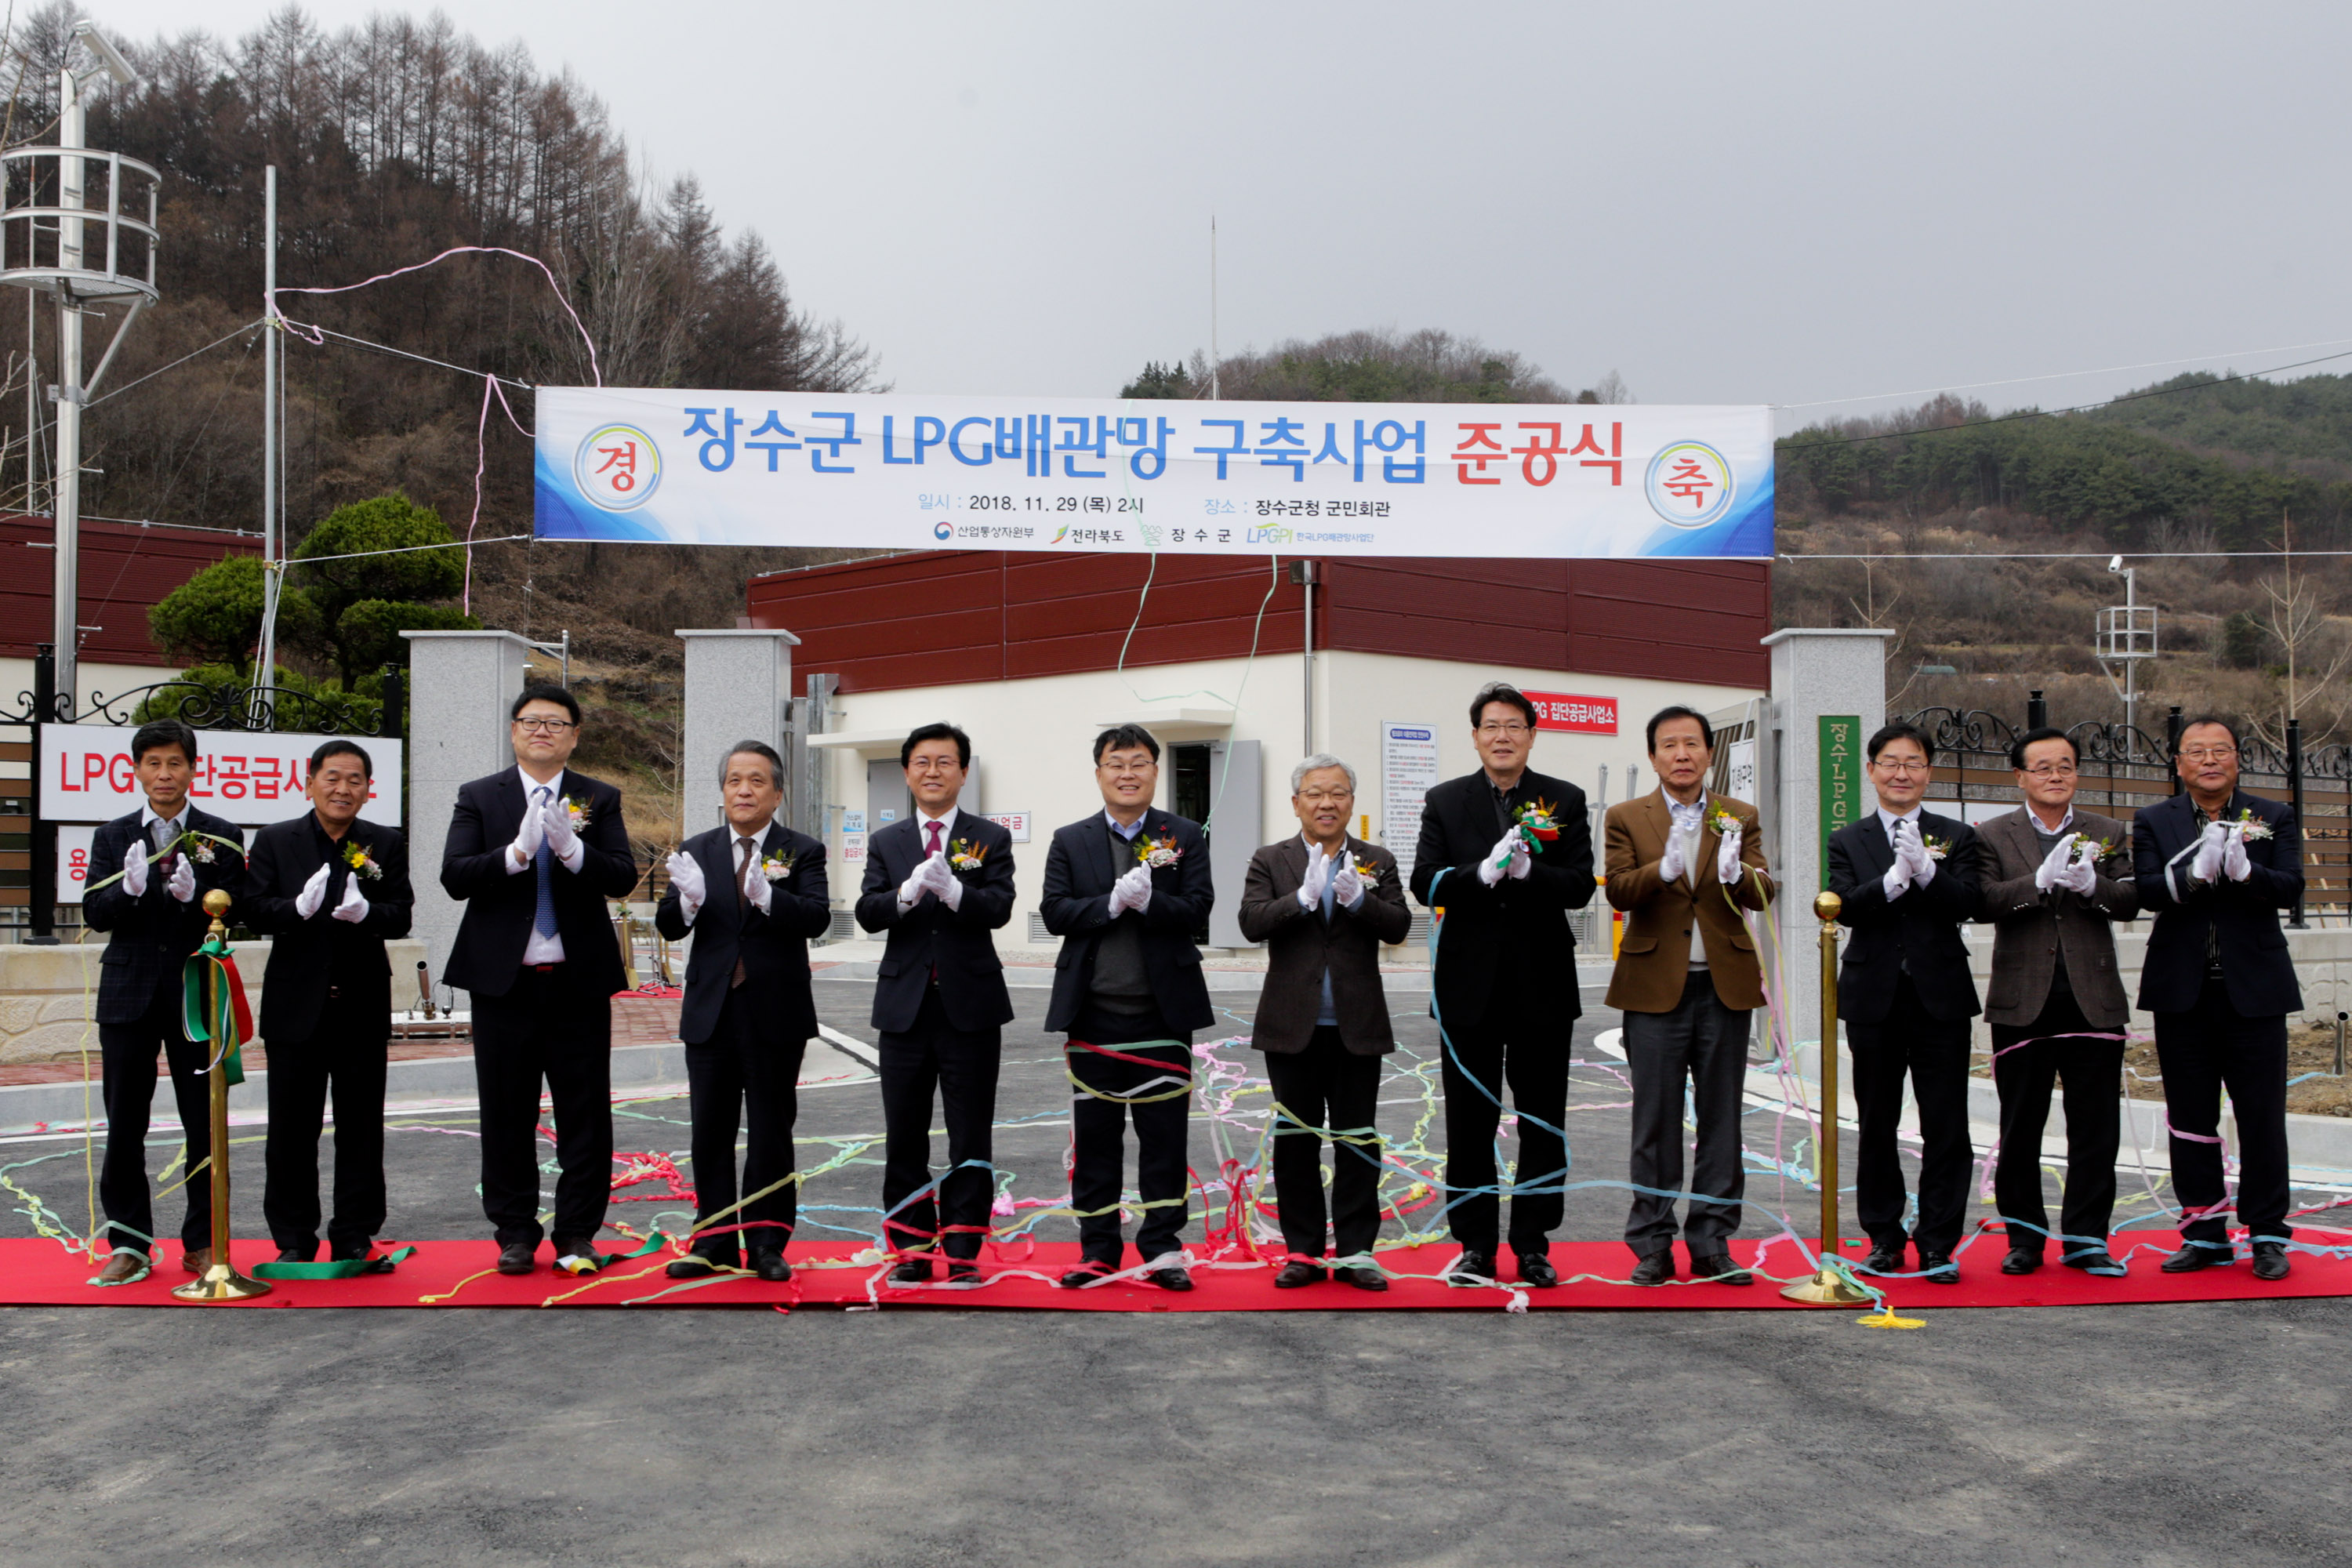 LPG 배관망 구축사업 준공식 개최 사진(2)